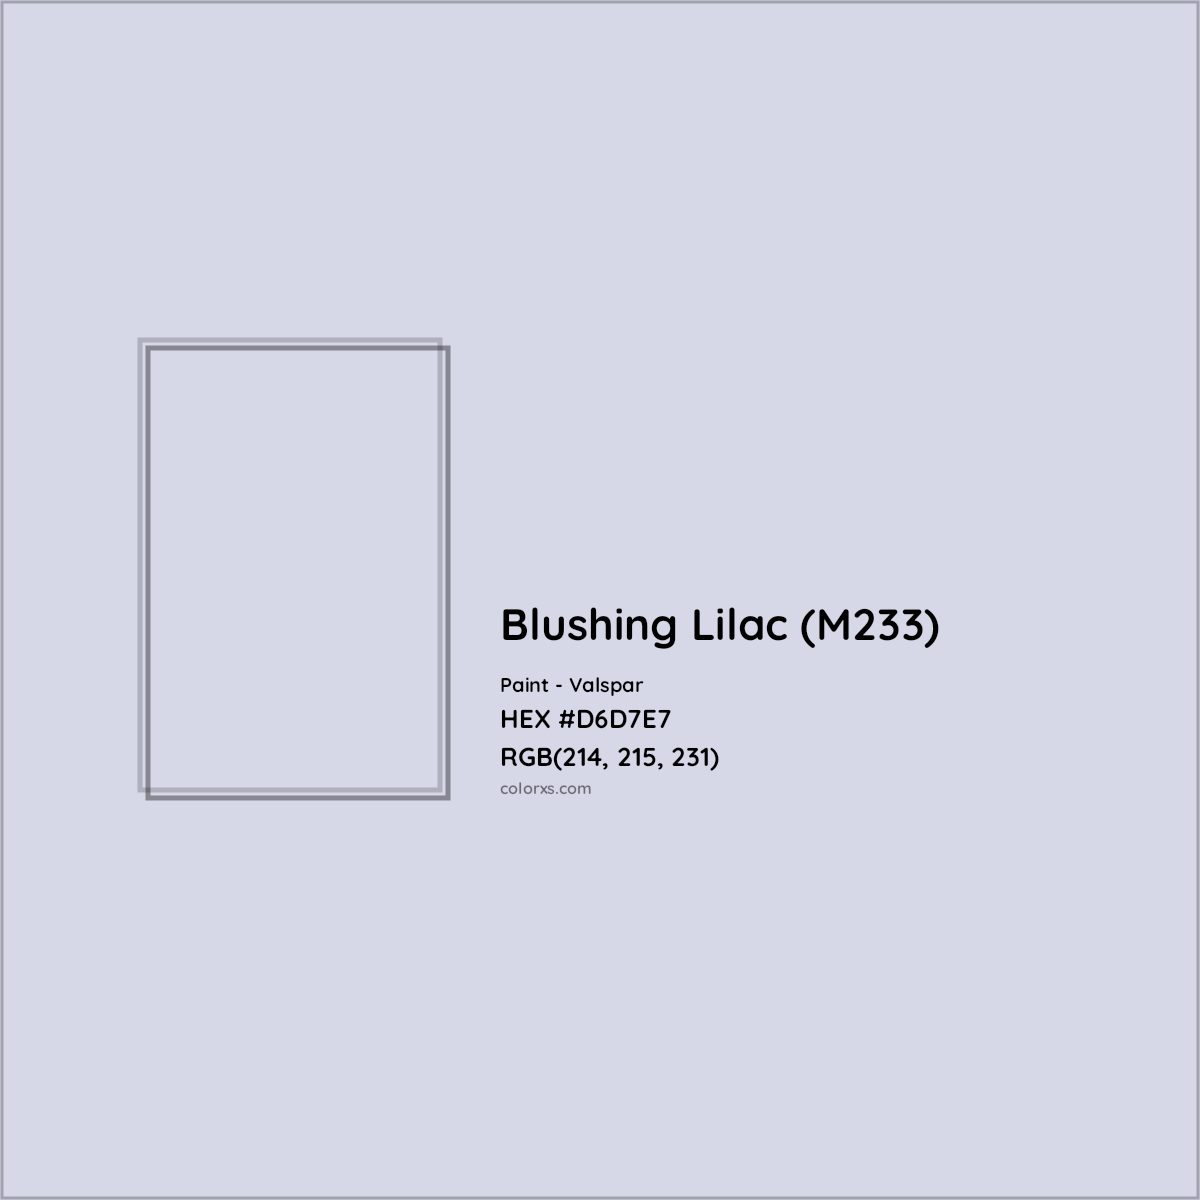 HEX #D6D7E7 Blushing Lilac (M233) Paint Valspar - Color Code